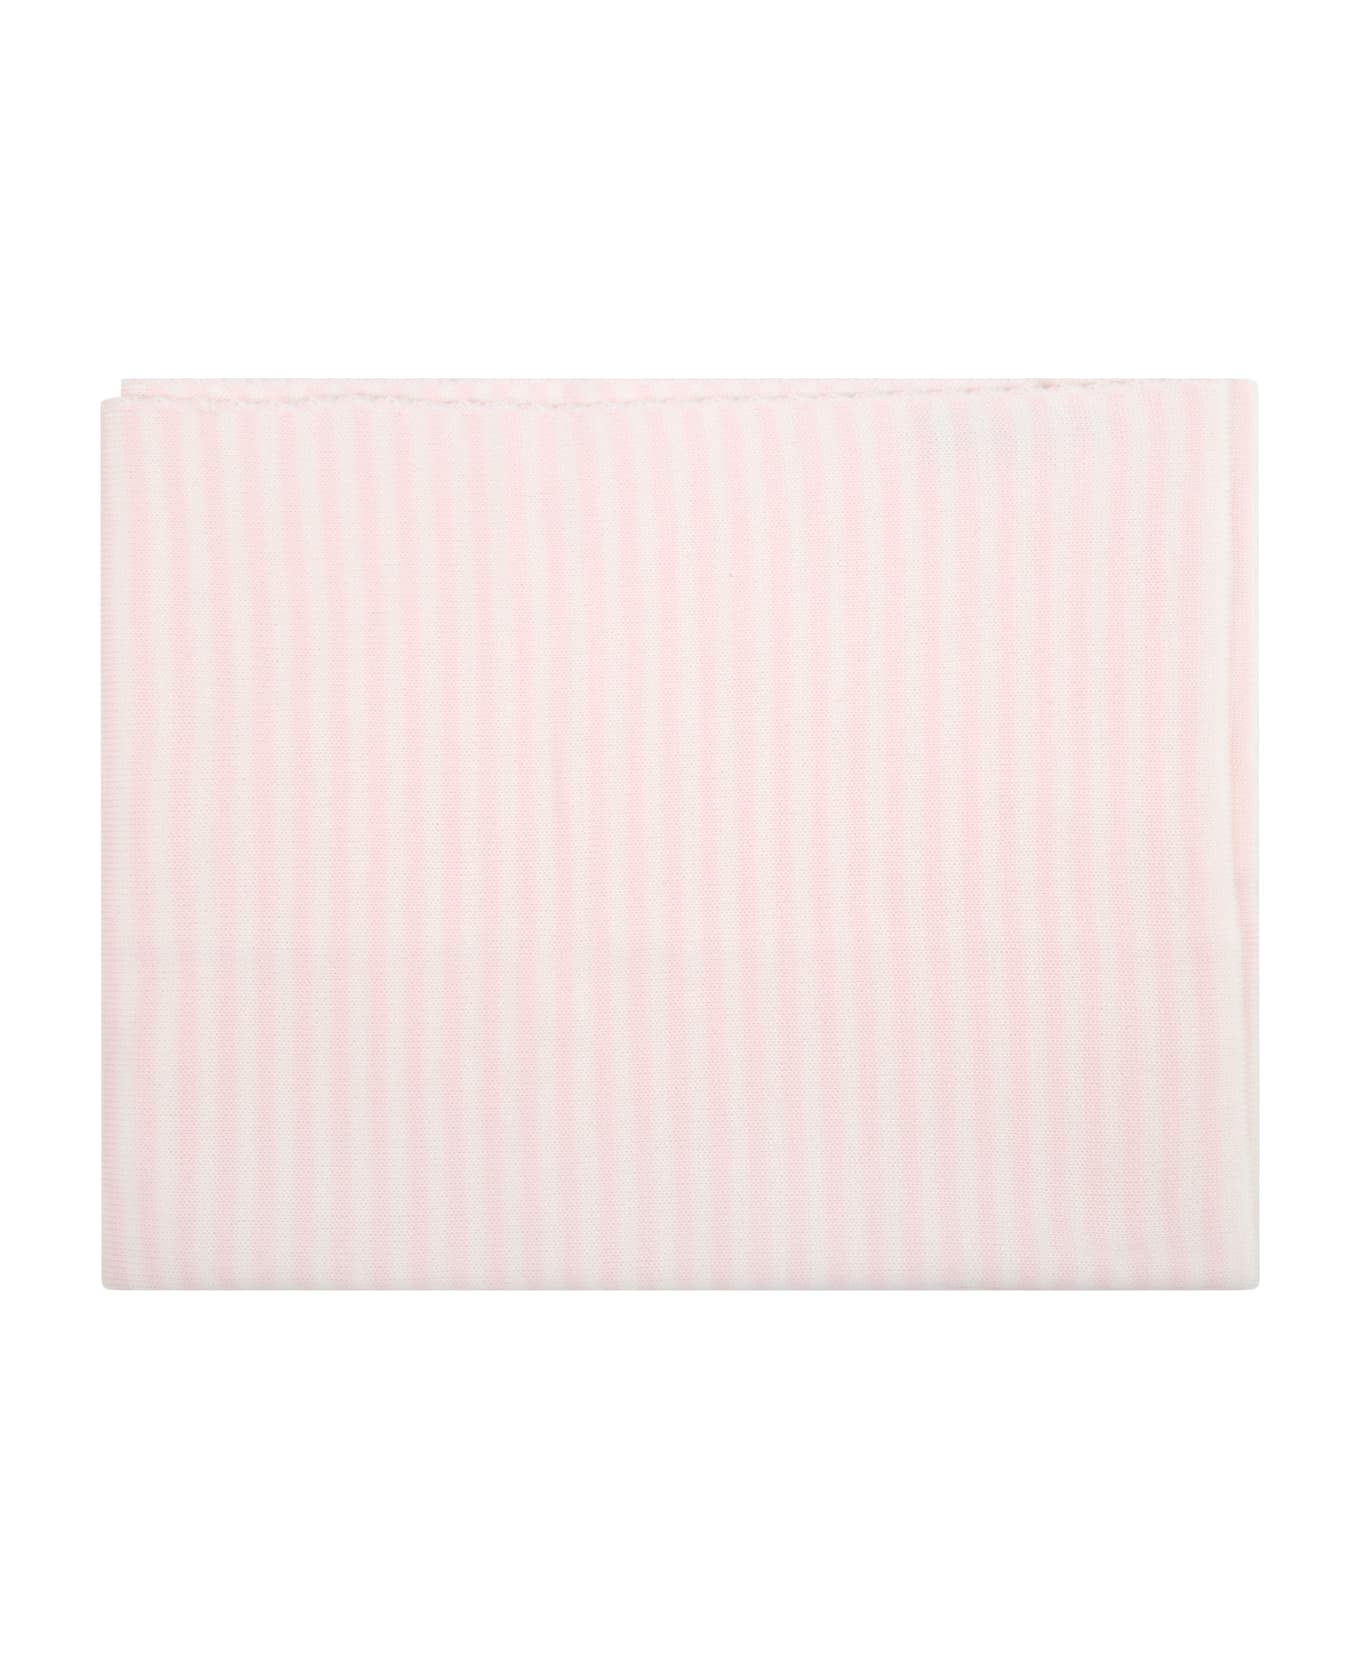 Little Bear Multicolor Blanket For Baby Girl - Pink